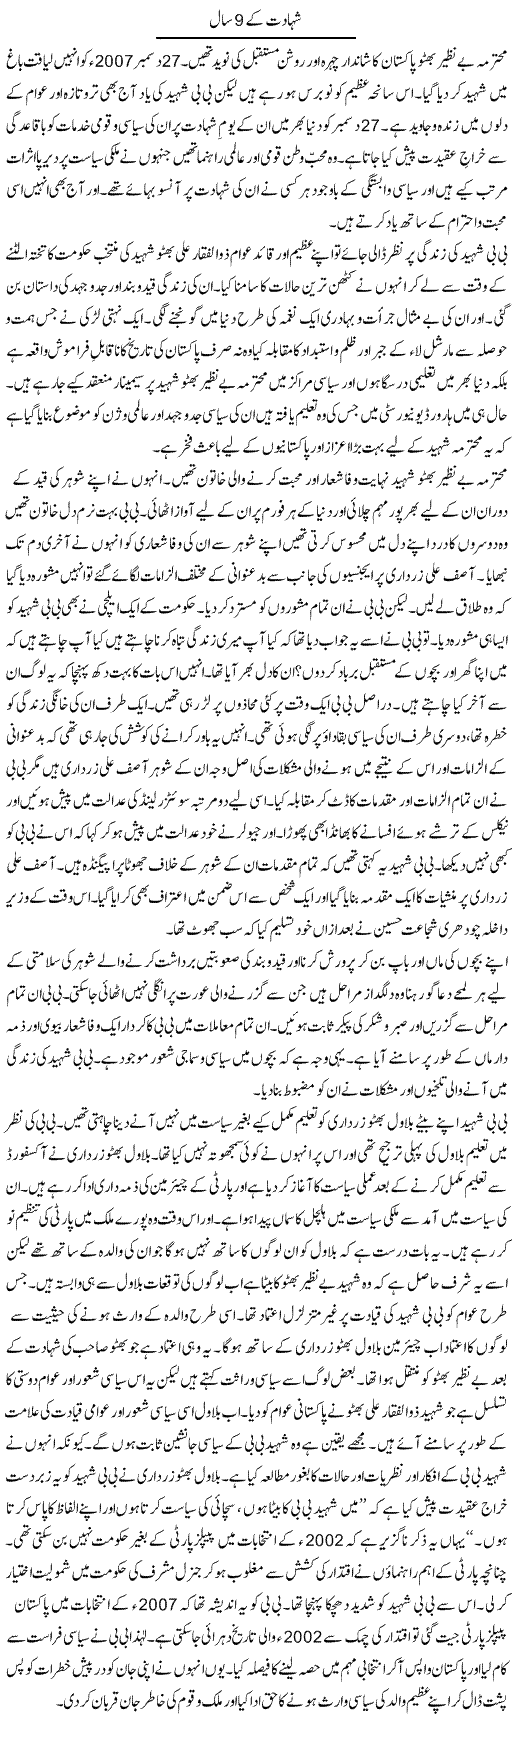 Shahadat Ke 9 Saal | Bashir Riaz | Daily Urdu Columns